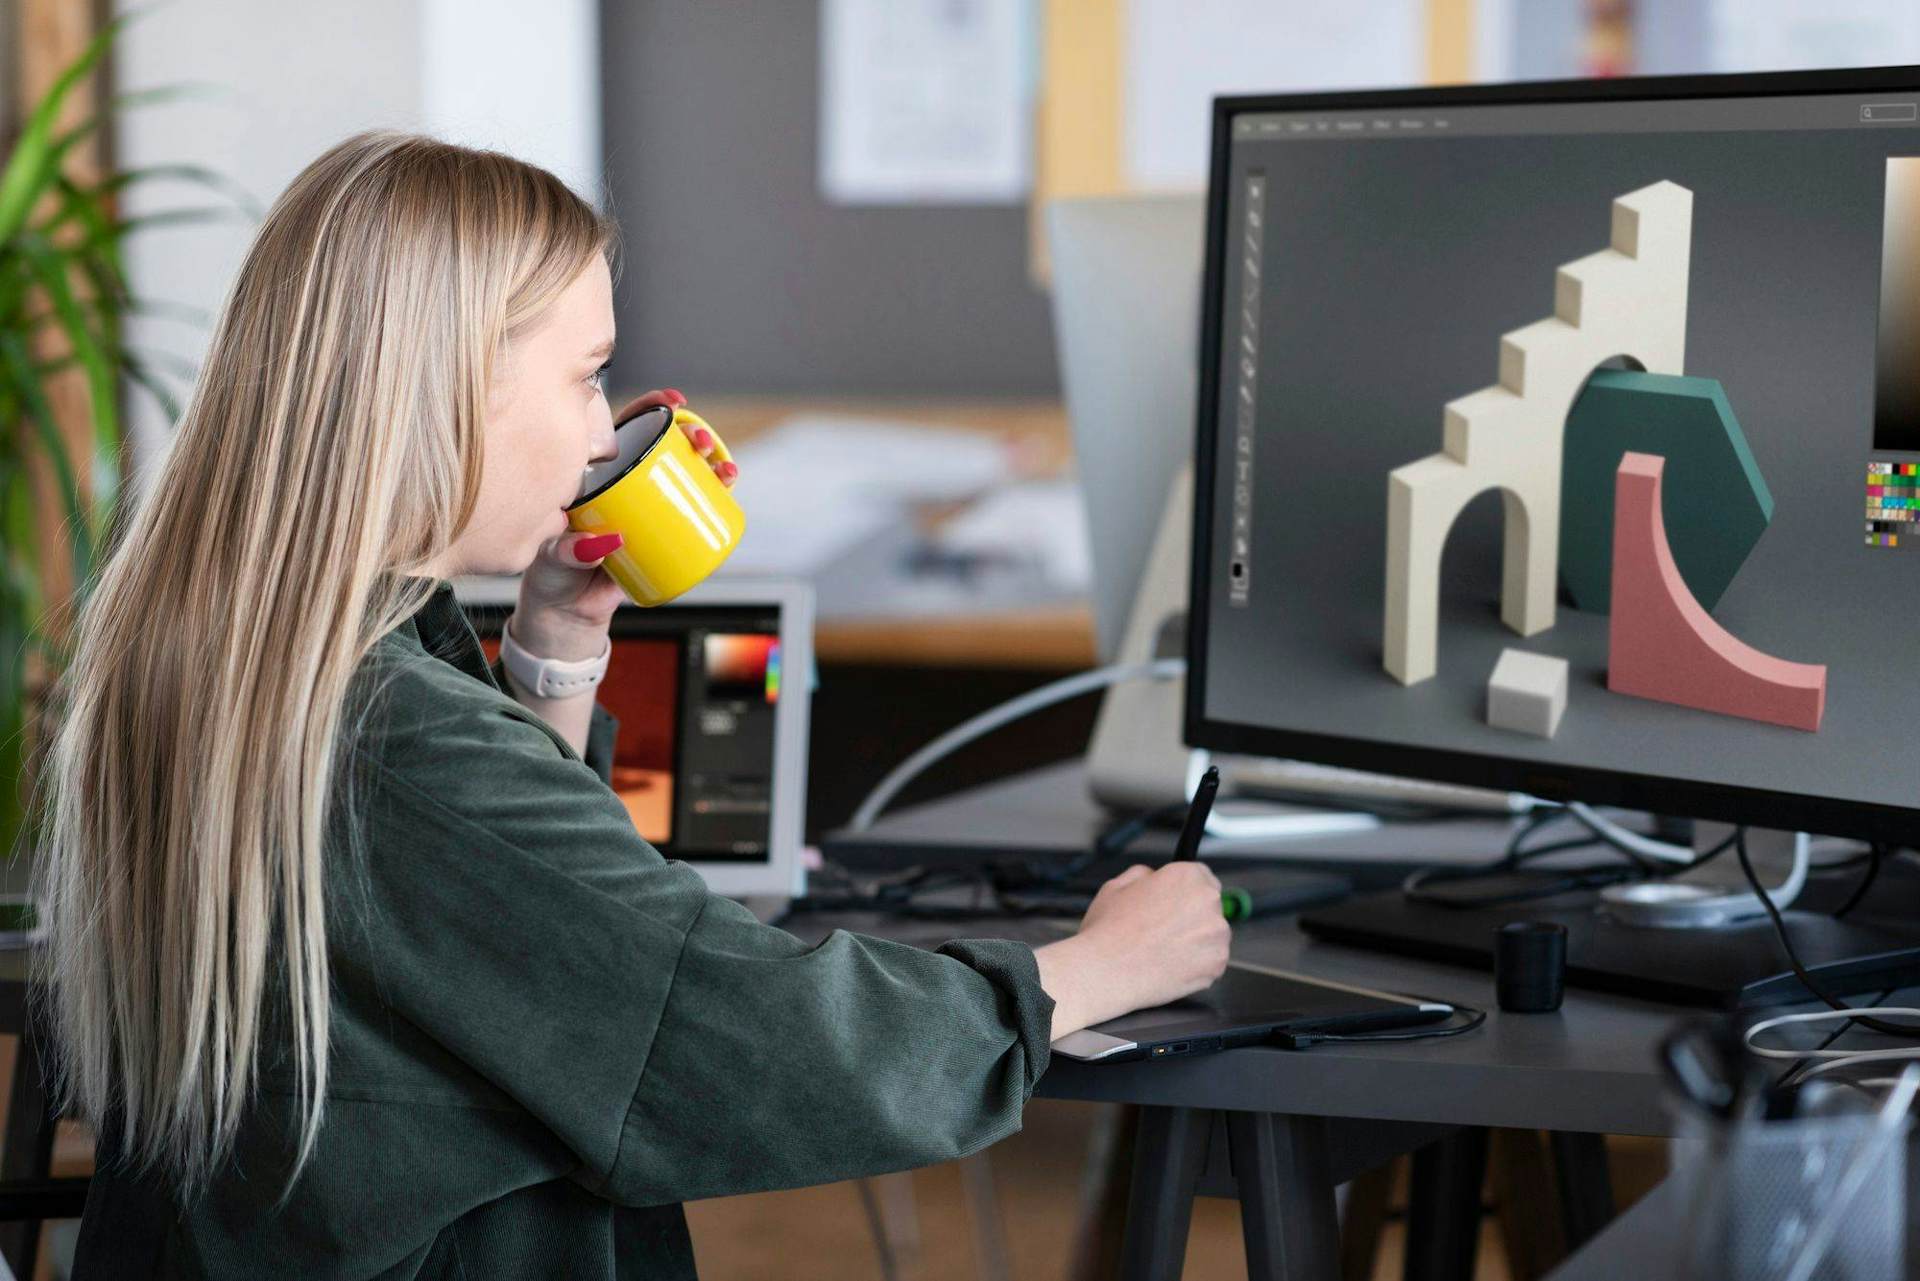 3D Blender tanfolyam / Látványtervező tanfolyam / 3D Modellező tanfolyam / 3D nyomtatás tanfolyam